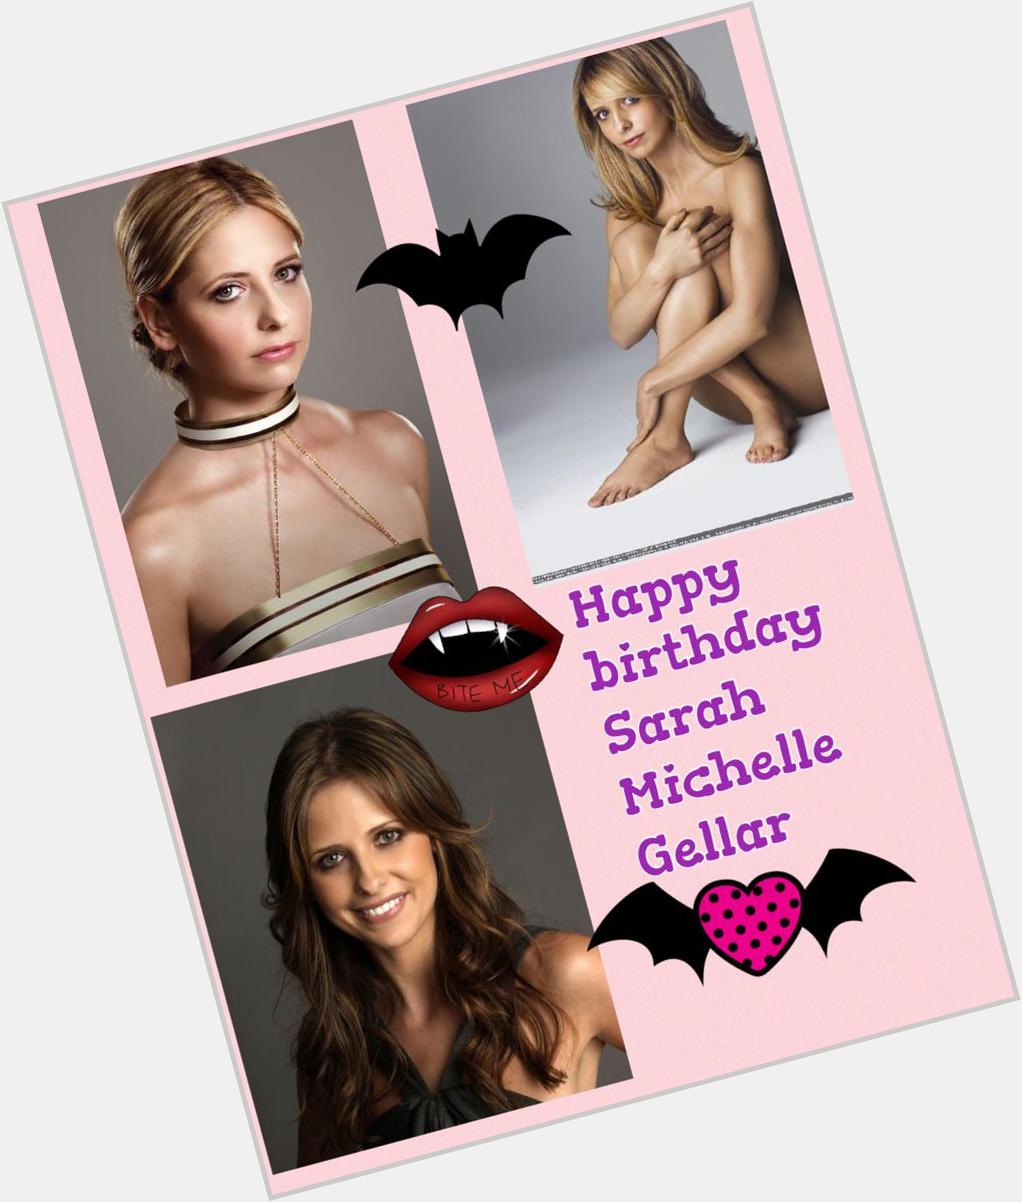 Happy birthday Sarah Michelle Gellar  